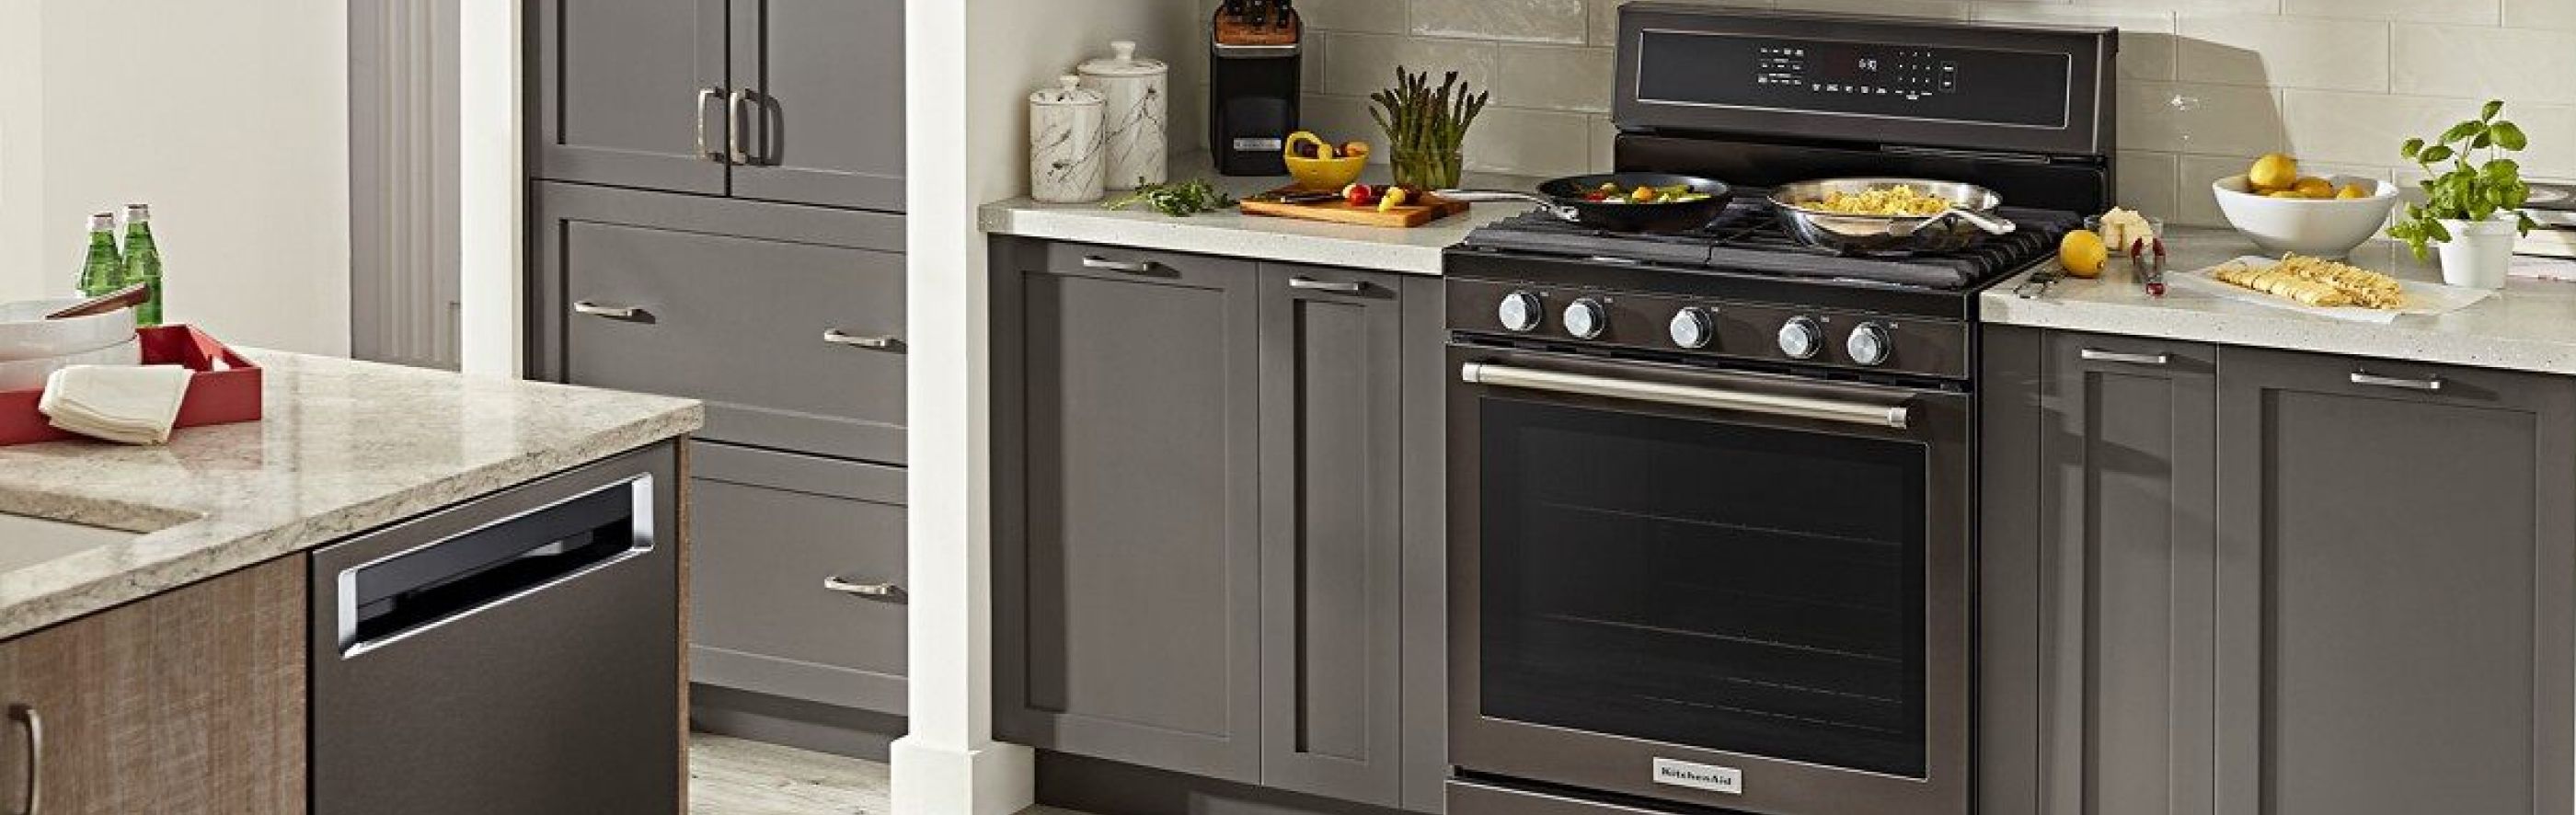 A KitchenAid® stainless steel range in a modern kitchen